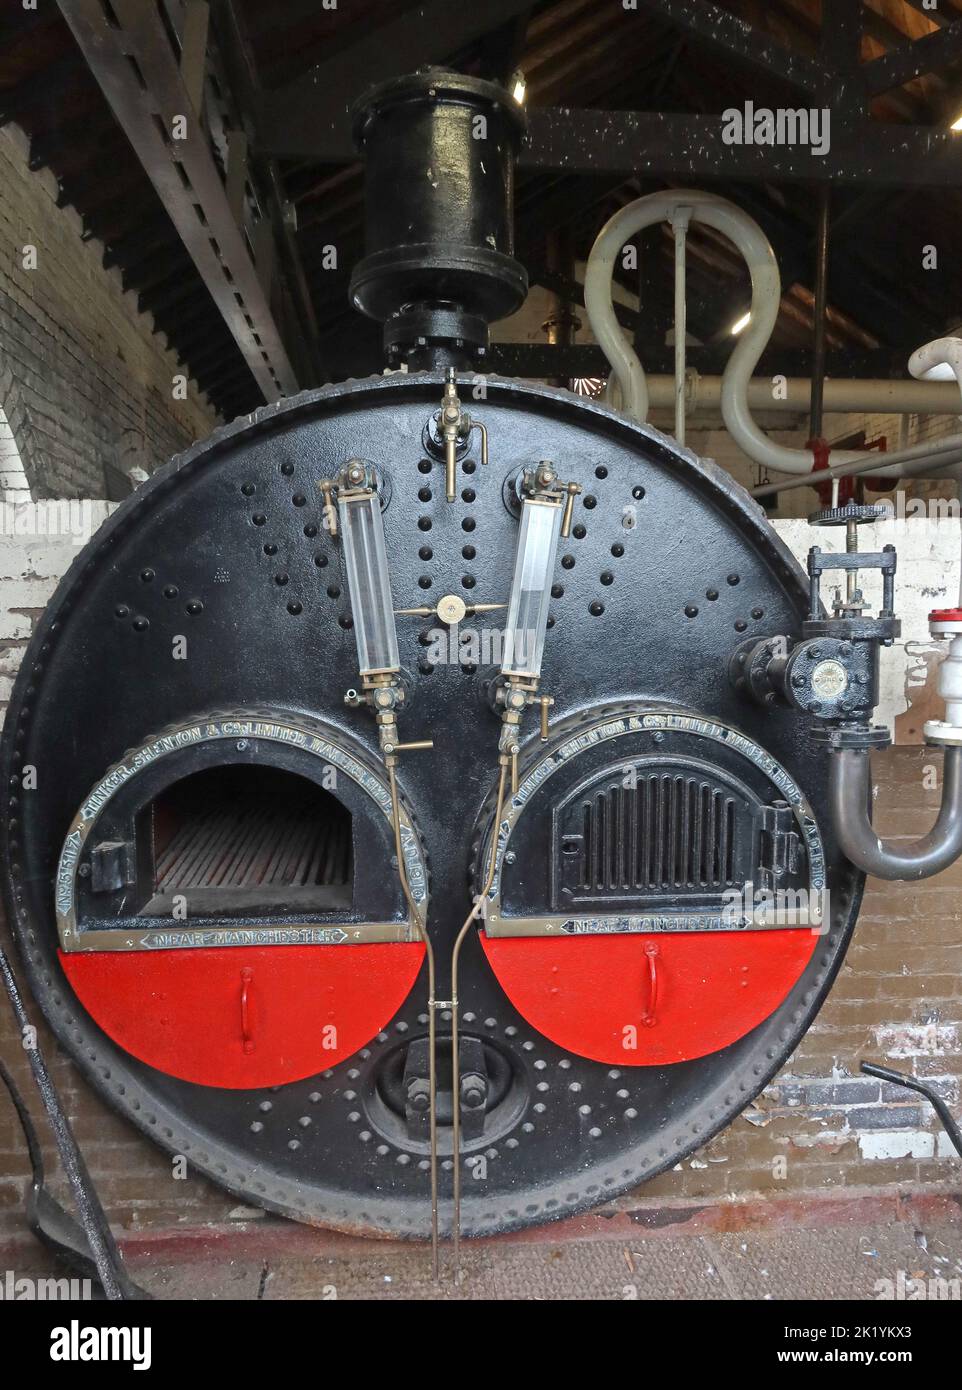 Tinker , Shenton, pompa dell'acqua di vapore, Museo nazionale delle vie navigabili, South Pier Rd, Ellesmere Port, Cheshire, Inghilterra, Regno Unito, CH65 4FW Foto Stock